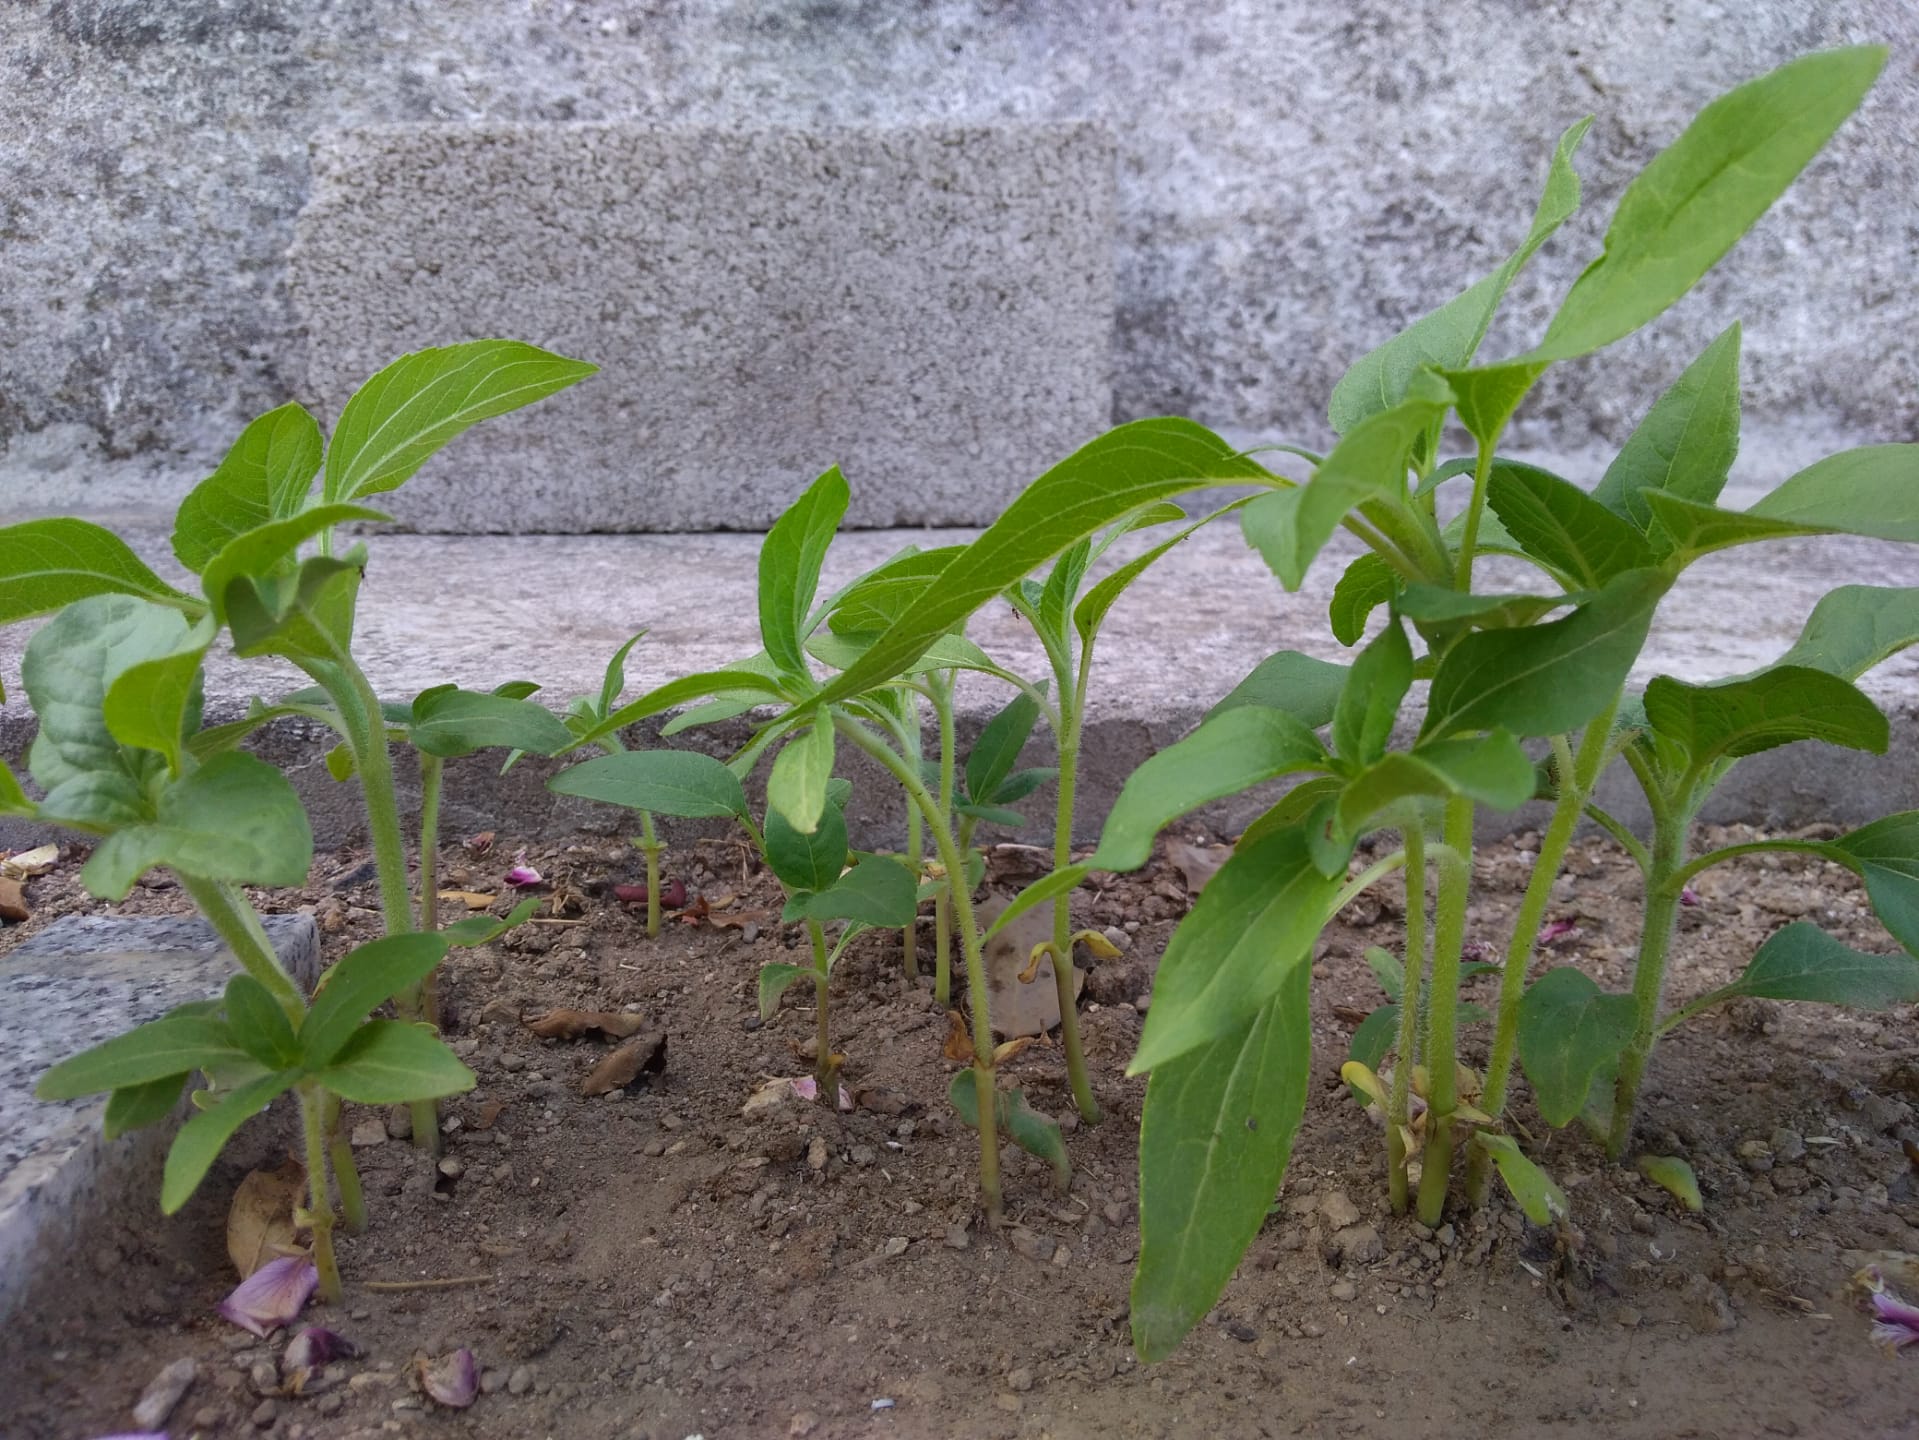 planta do girassol (4 semanas)